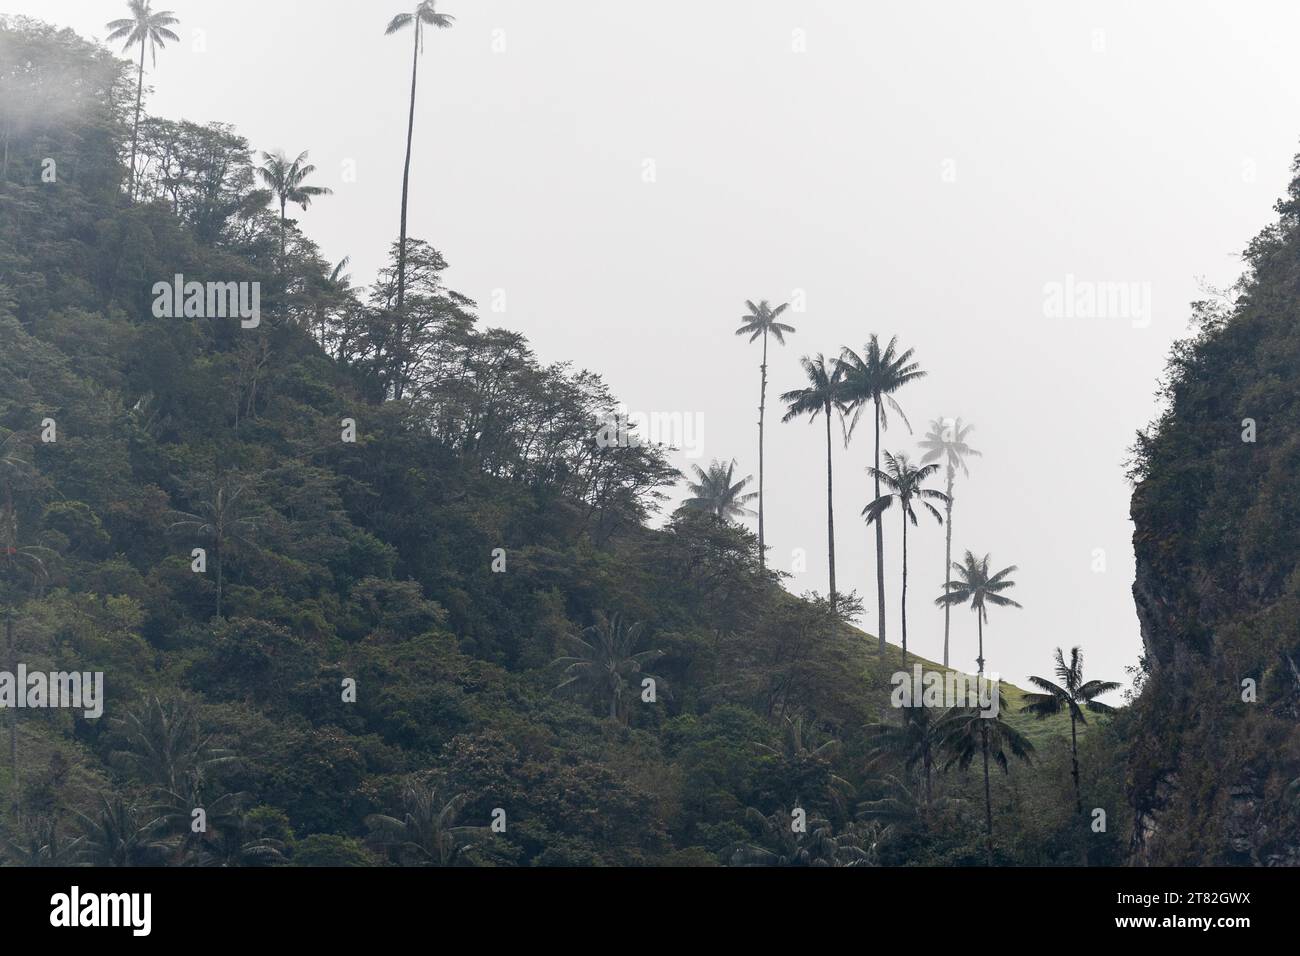 Groupe de palmiers à cire (Ceroxylon quindiuense) dans le brouillard, Valle de Cocora, Colombie Banque D'Images